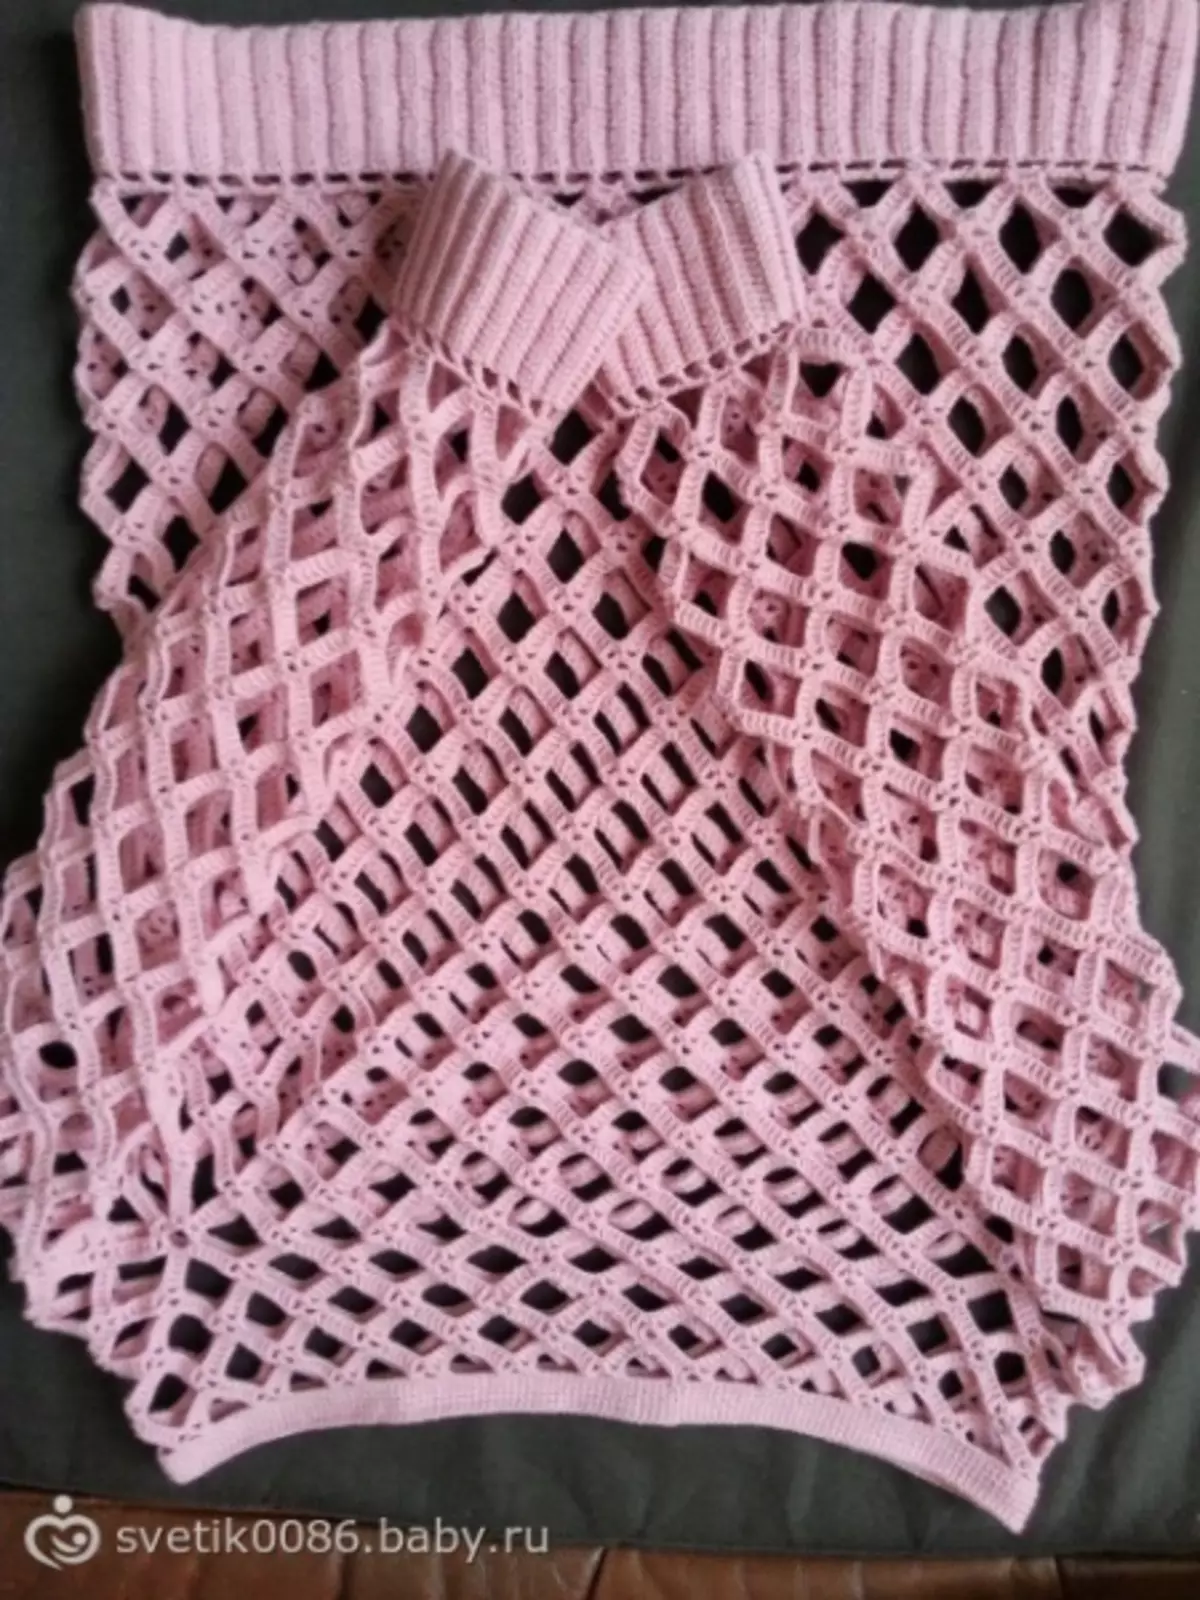 Malha malha crochet para iniciantes com esquemas e descrição